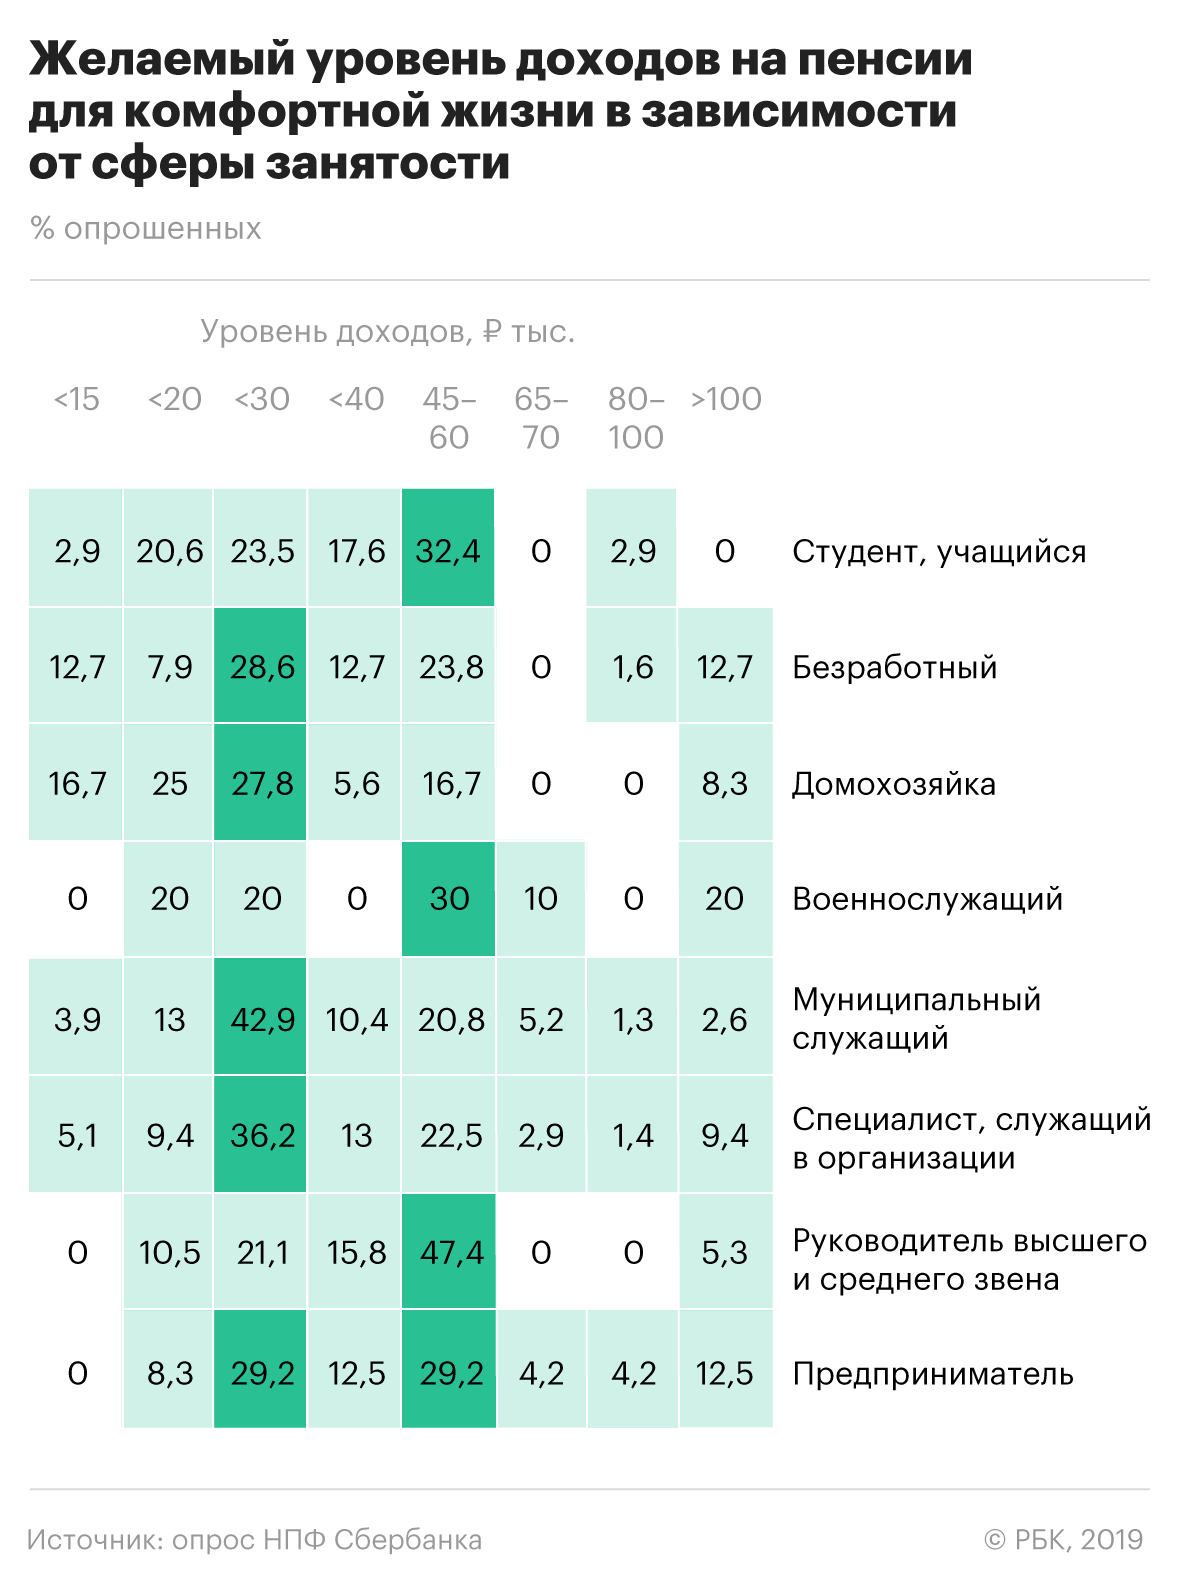 Россияне назвали желаемый размер дохода для комфортной жизни на пенсии